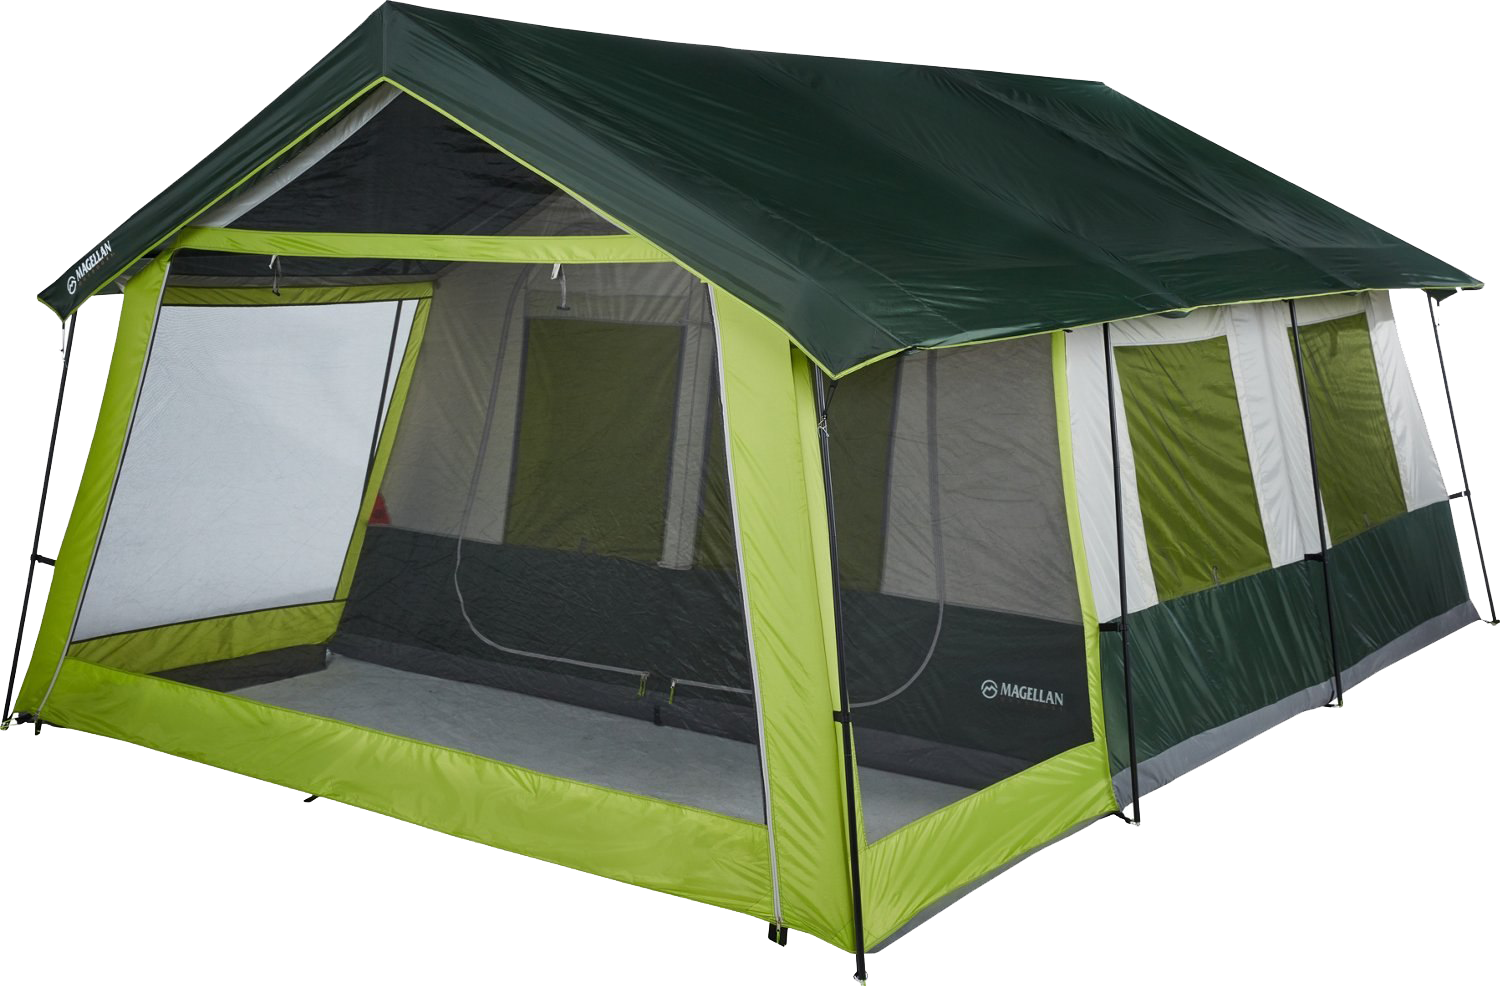 Лагерь модульный (шатер и 2 палатки) Nash Base Camp. Quechua mh100 палатка. Палатка кемпинг домик зеленый xyp602. Палатка best Camp 165*165. Купить палатку м